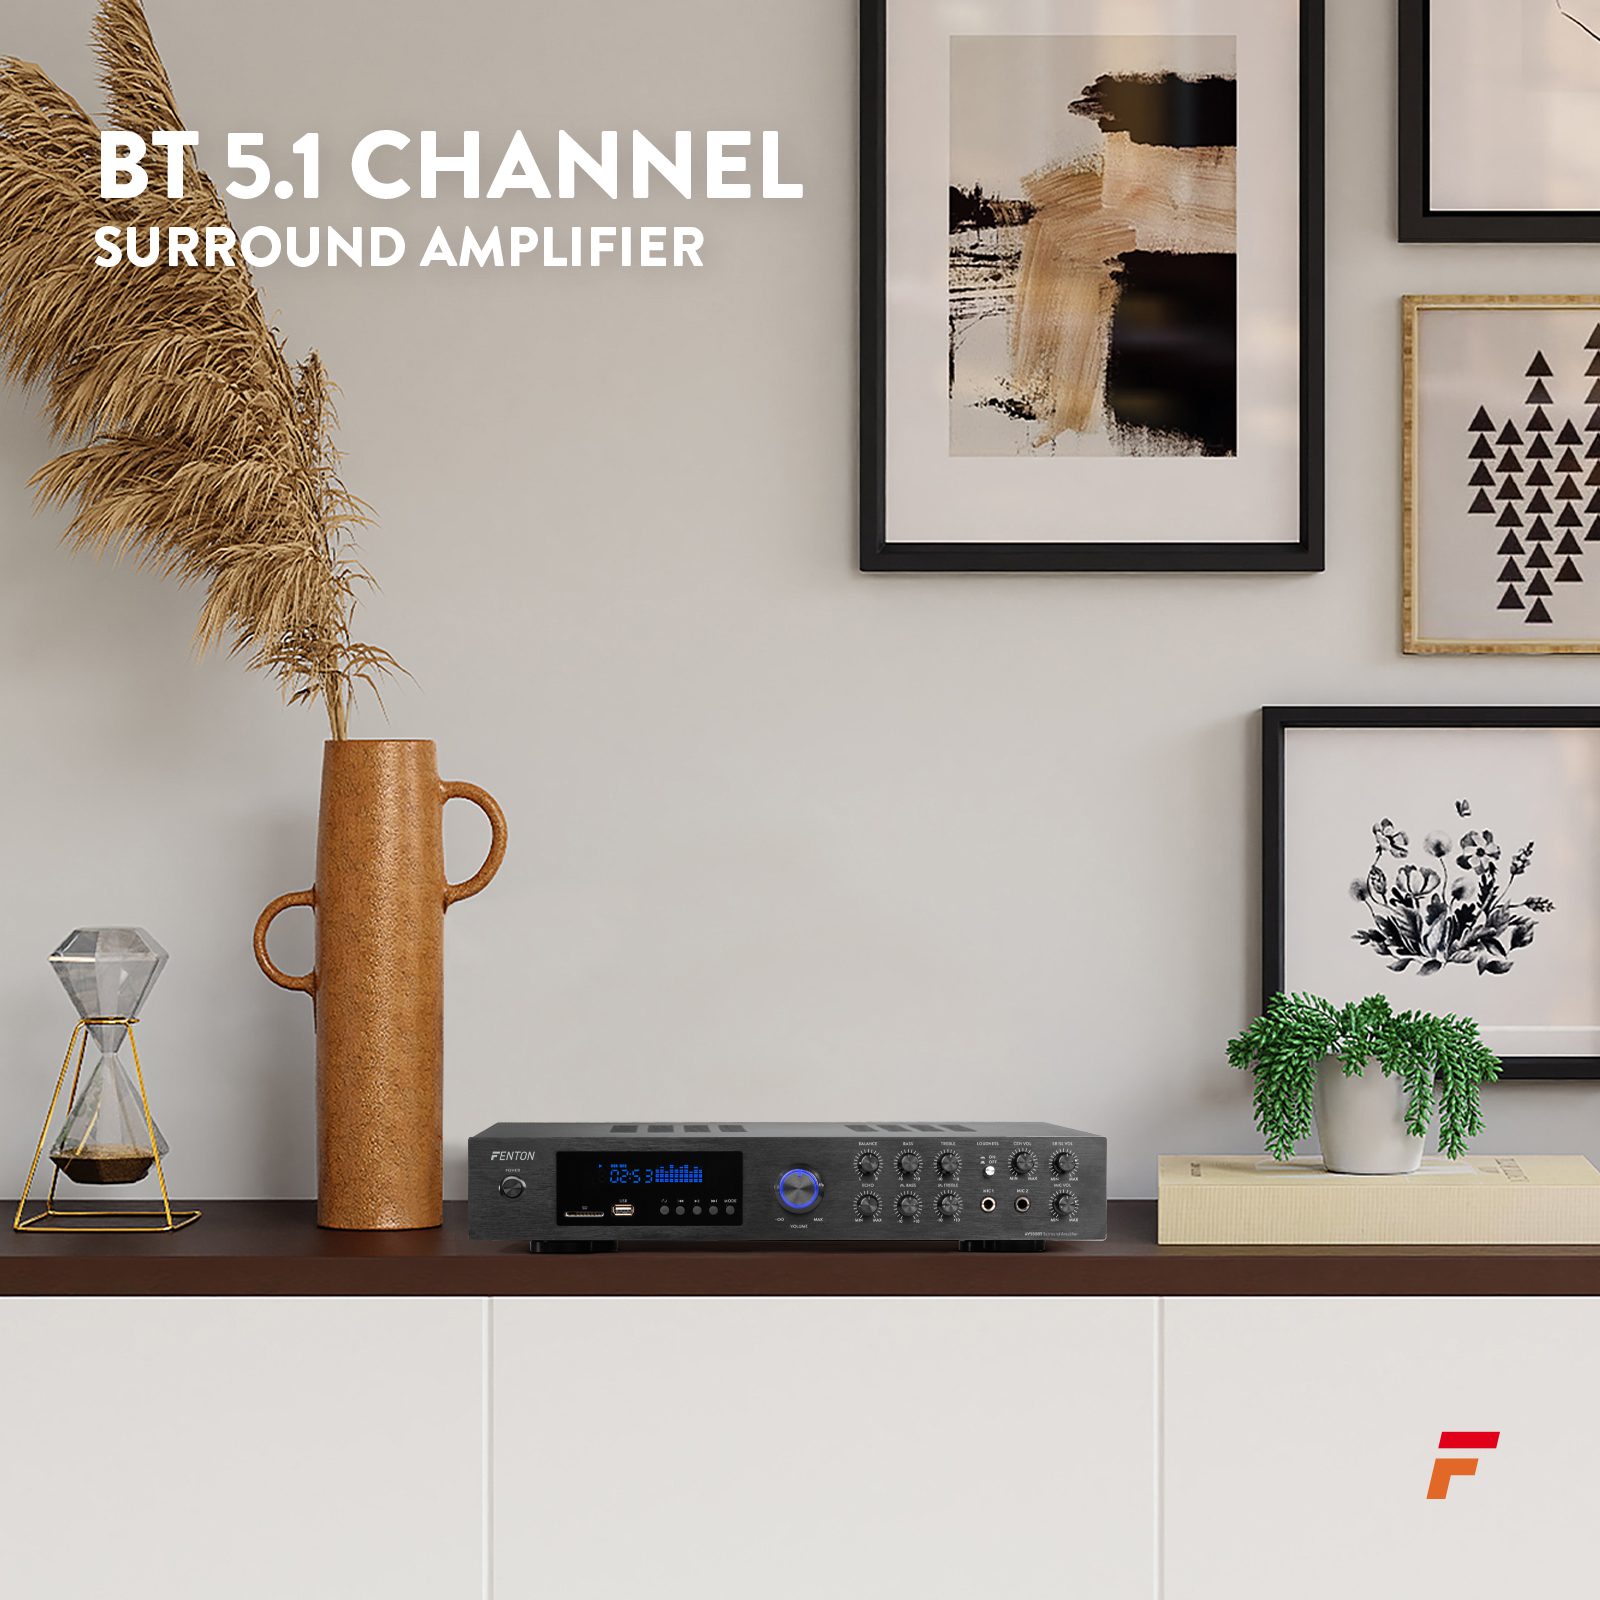 FENTON AV550BT 5.1 Channel Home Surround amplifier 320 Watt FM/USB/MP3/SD/BT (103.230)